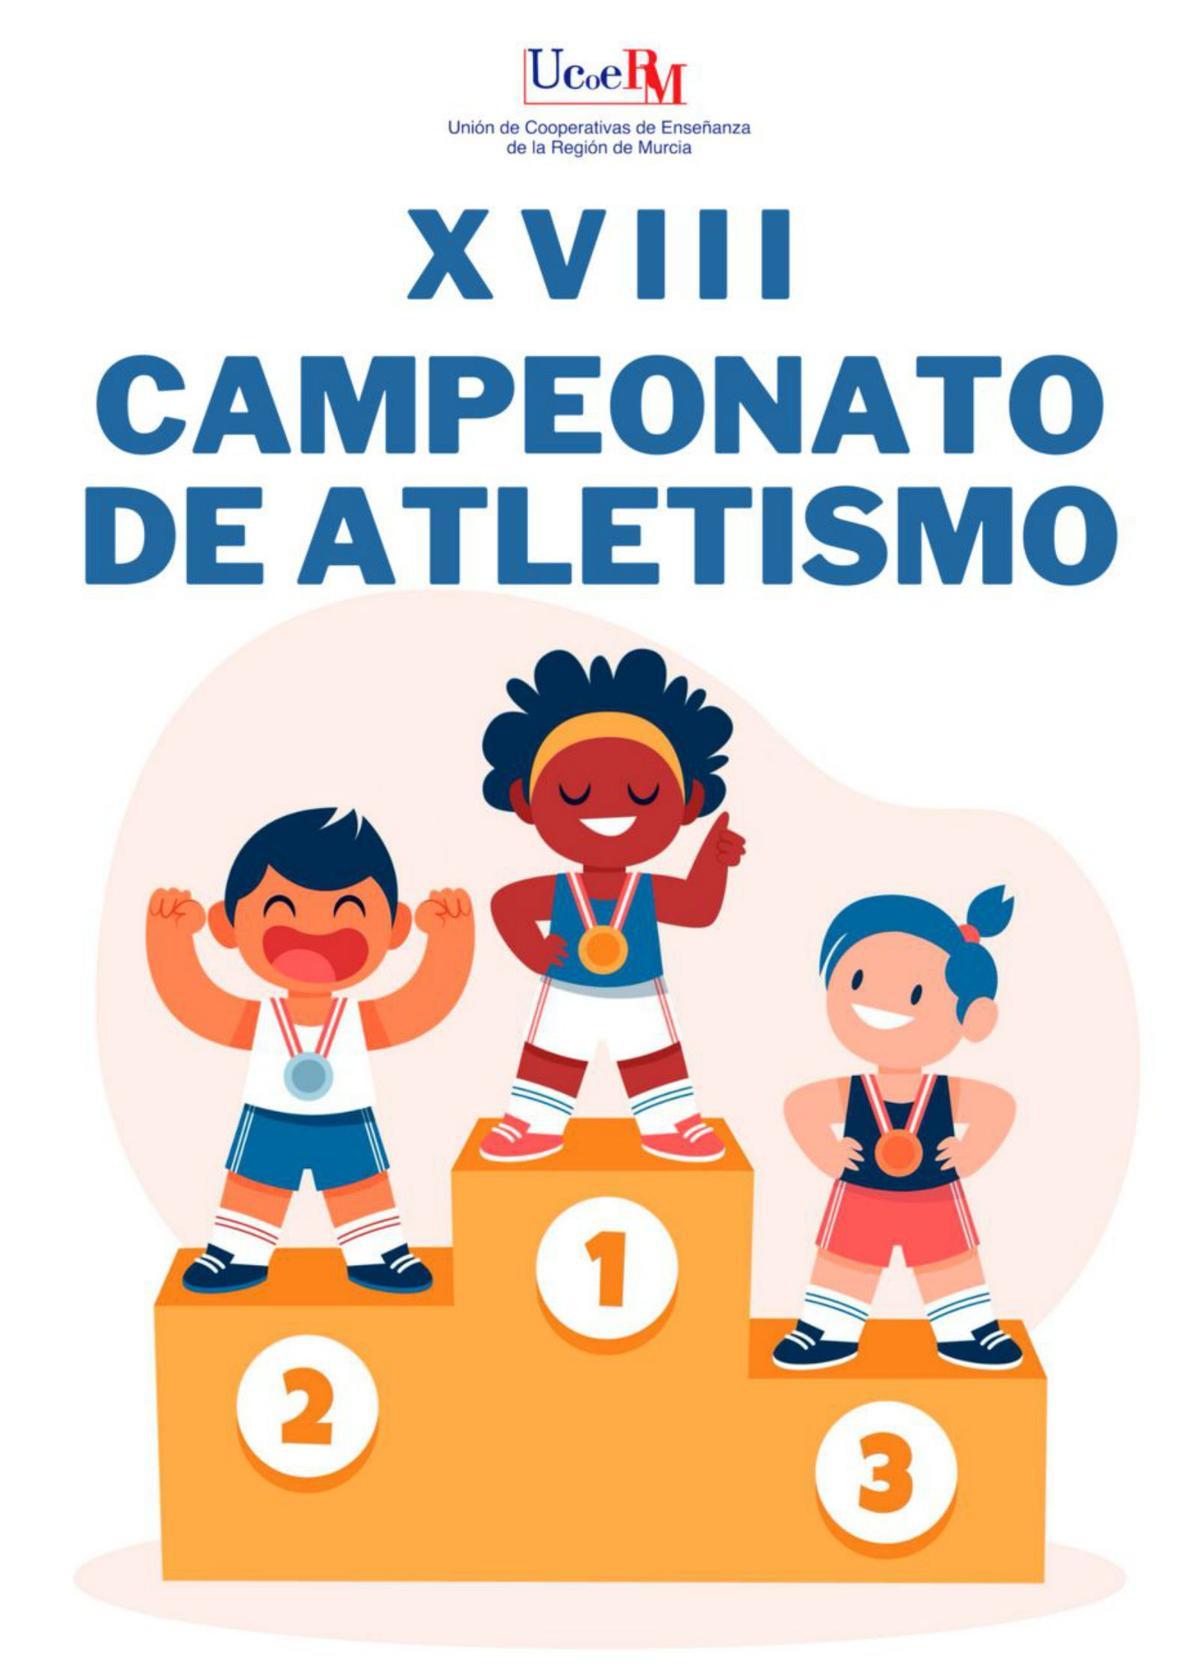 Ucoerm celebra su XVIII Campeonato  de Atletismo los días 6 y 7 de mayo 